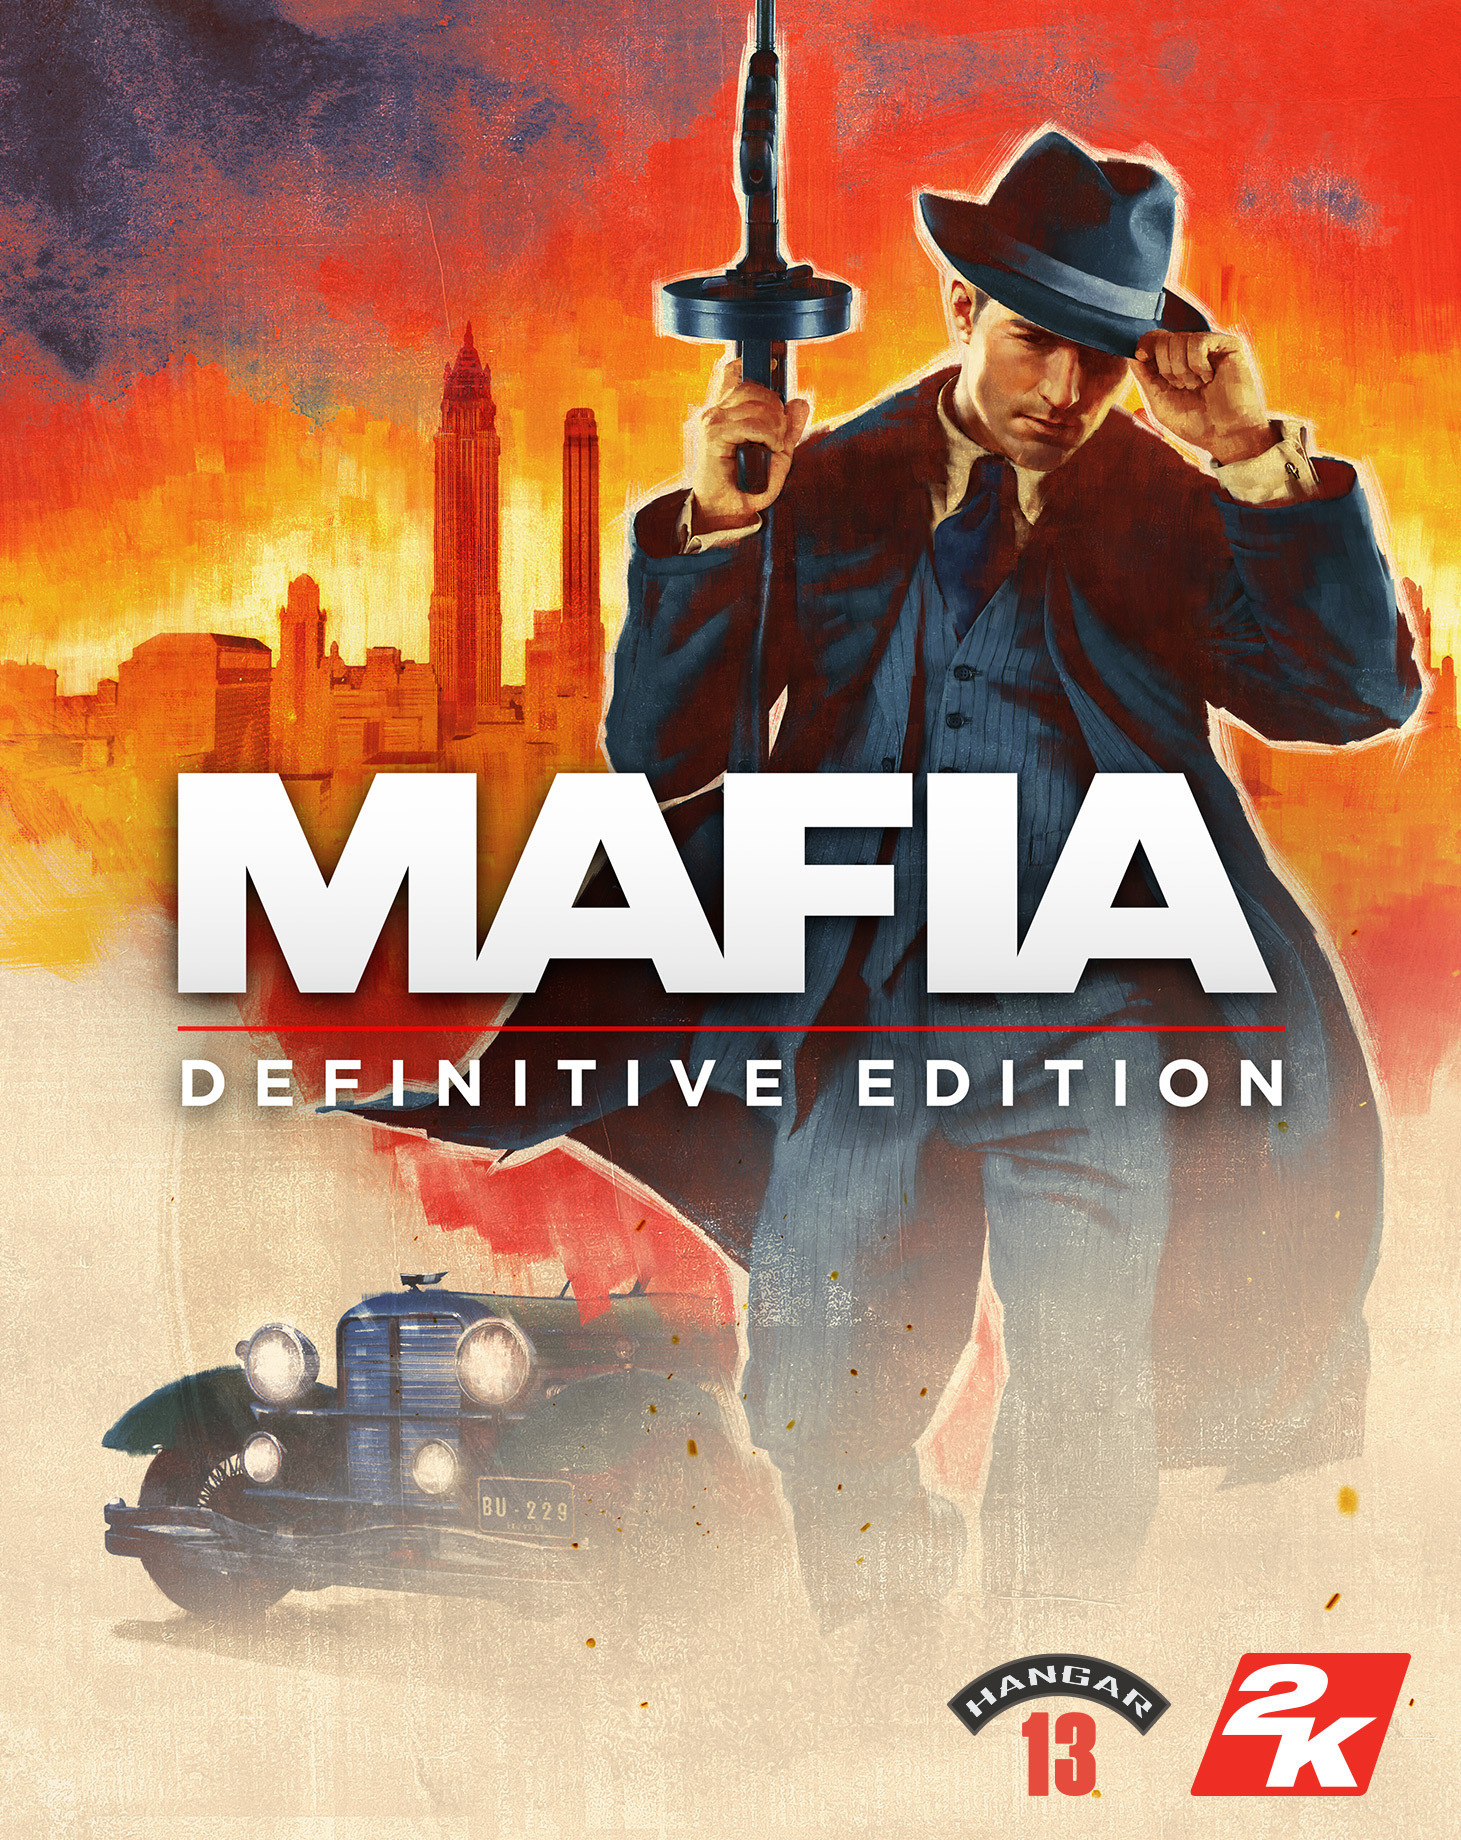 mafia trilogy xbox one digital download